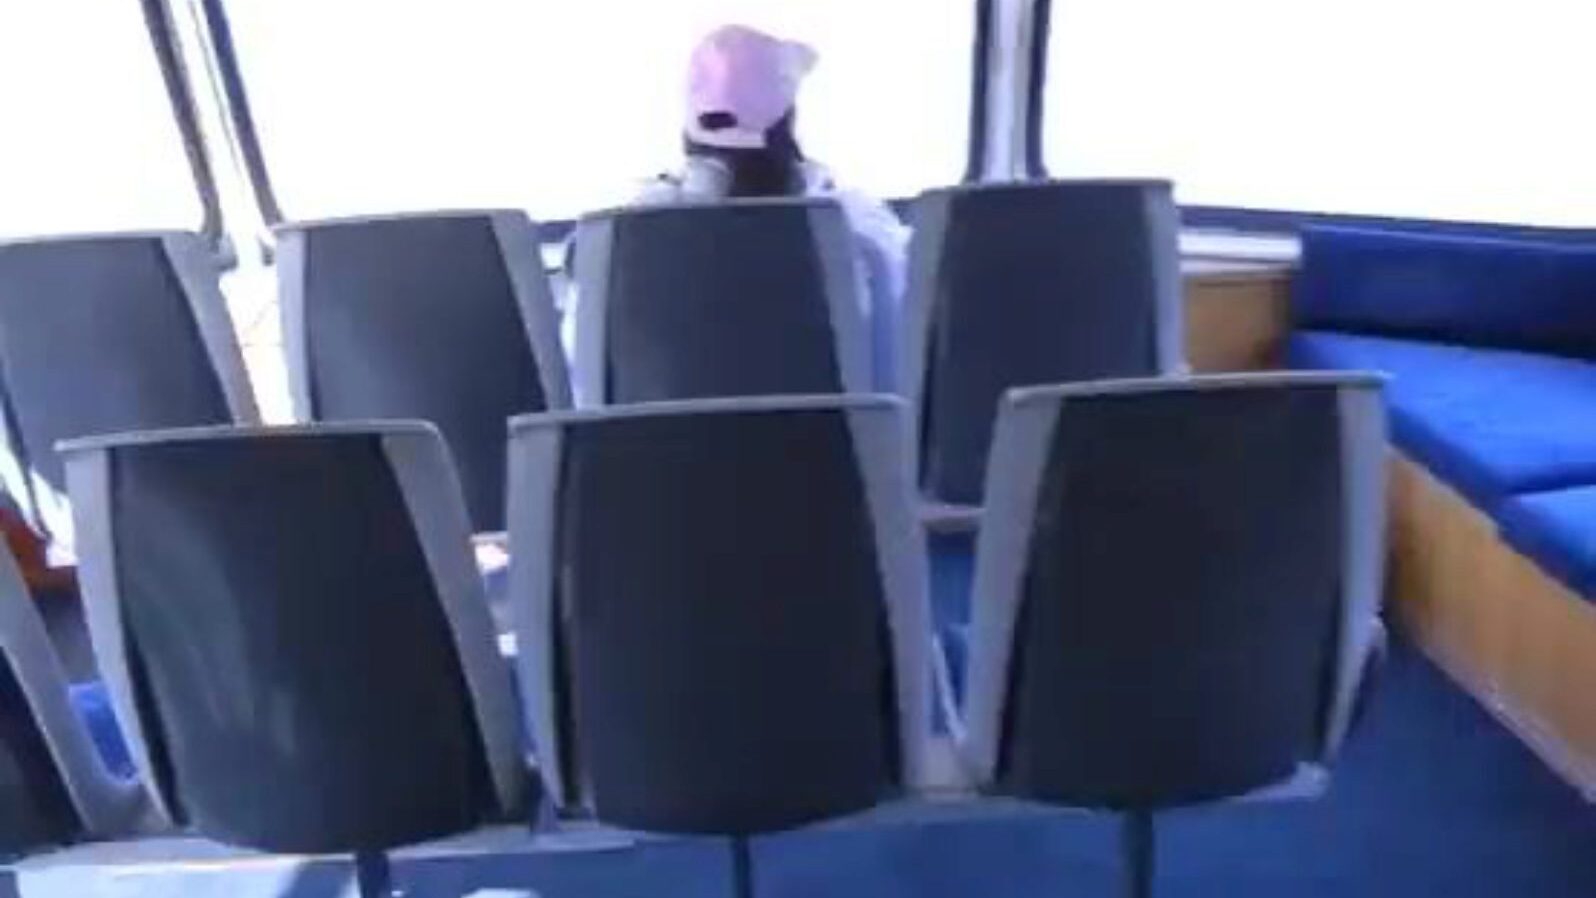 Non-Professional public porno on a ferry